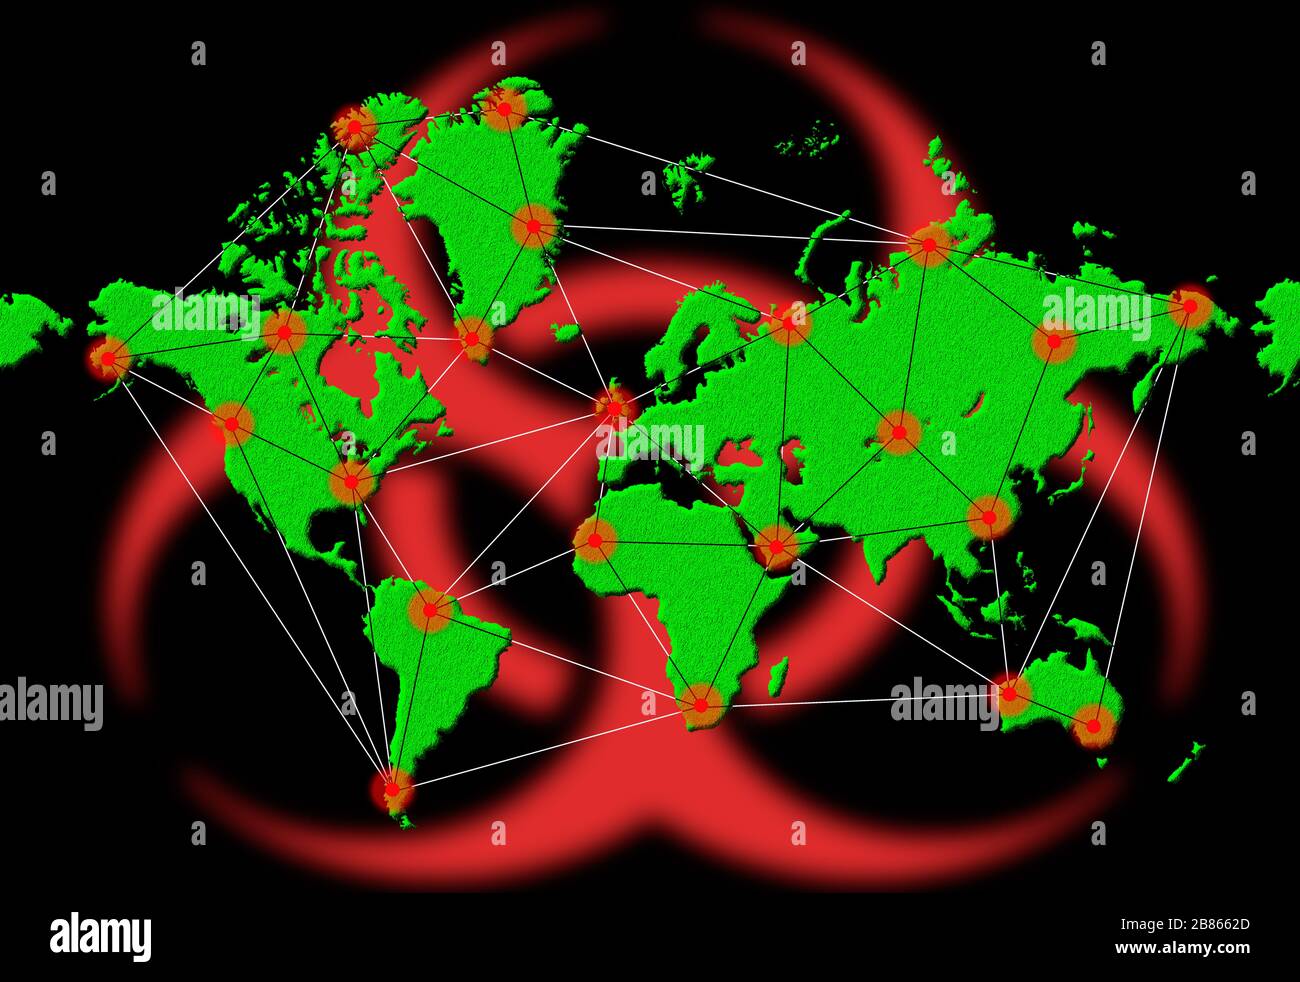 Abbildung oder Grafik zur weltweiten Verbreitung von Infektionen oder Infektionsviren auf der Weltkarte während eines pandemischen Coronavirus COVID 19.Virus. Stockfoto